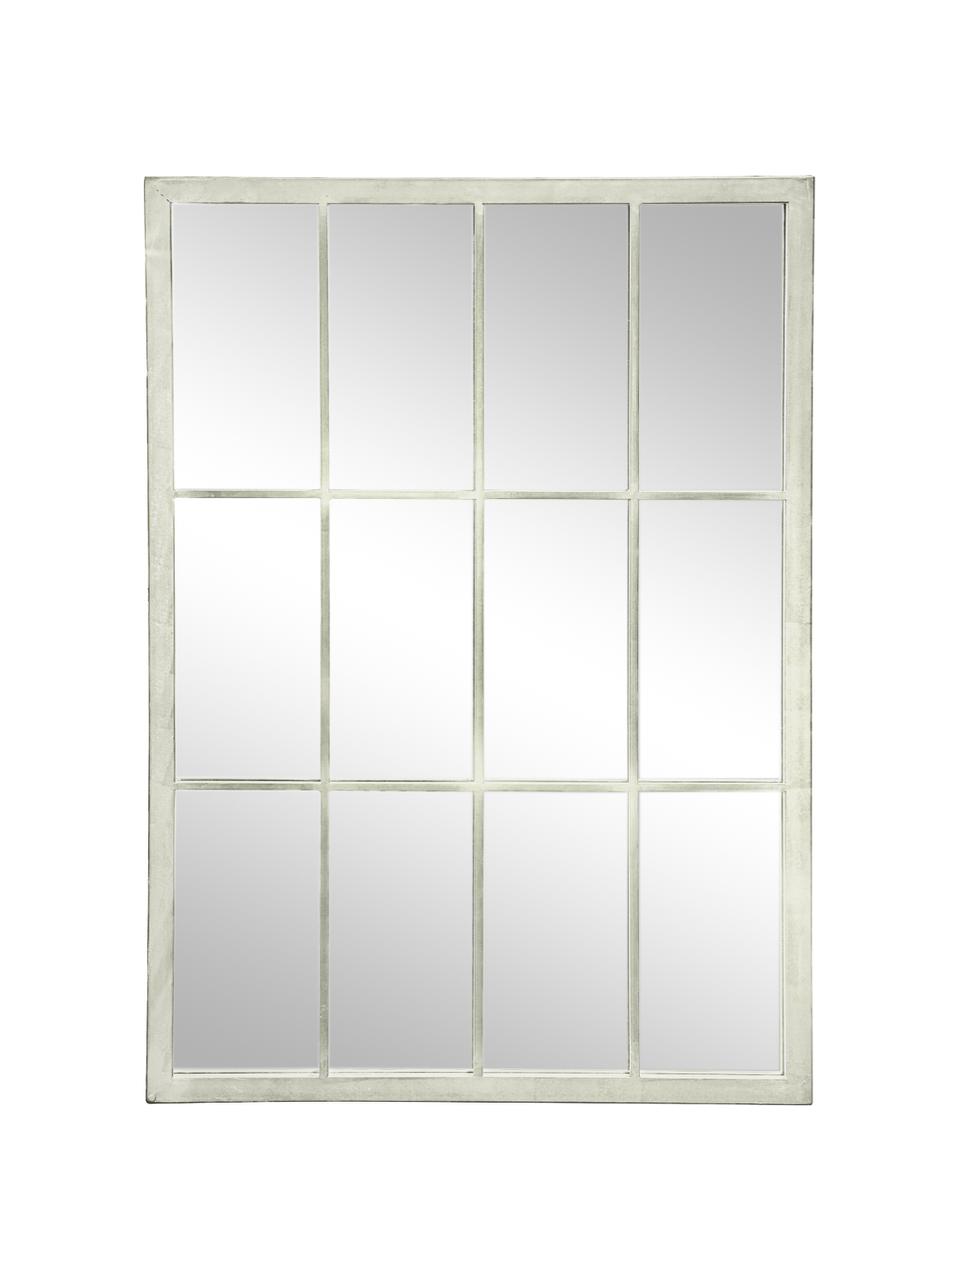 Eckiger Wandspiegel Zanetti mit weissem Metallrahmen, Rahmen: Metall, lackiert, Spiegelfläche: Spiegelglas, Weiss, B 50 x H 70 cm